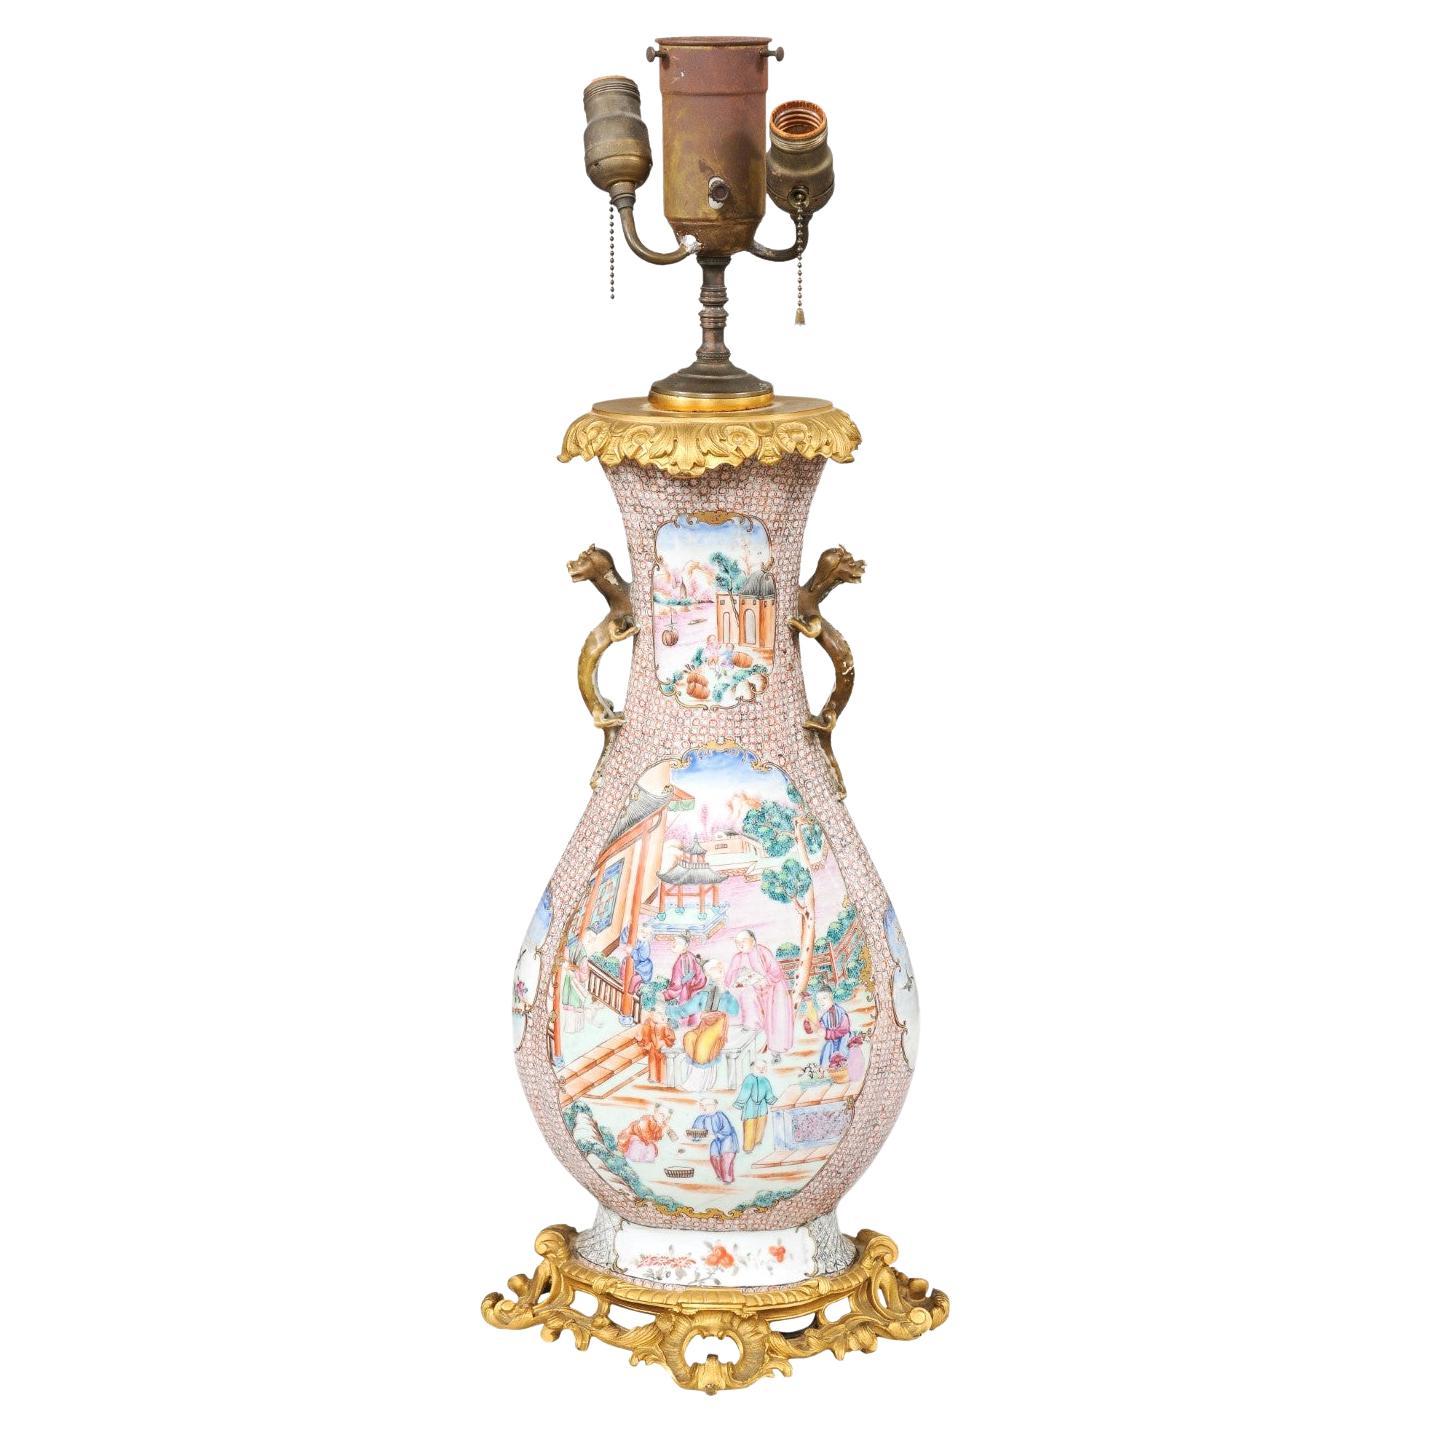  Grand vase d'exportation chinoise du 18ème siècle monté en bronze mandarin, câblé comme une lampe